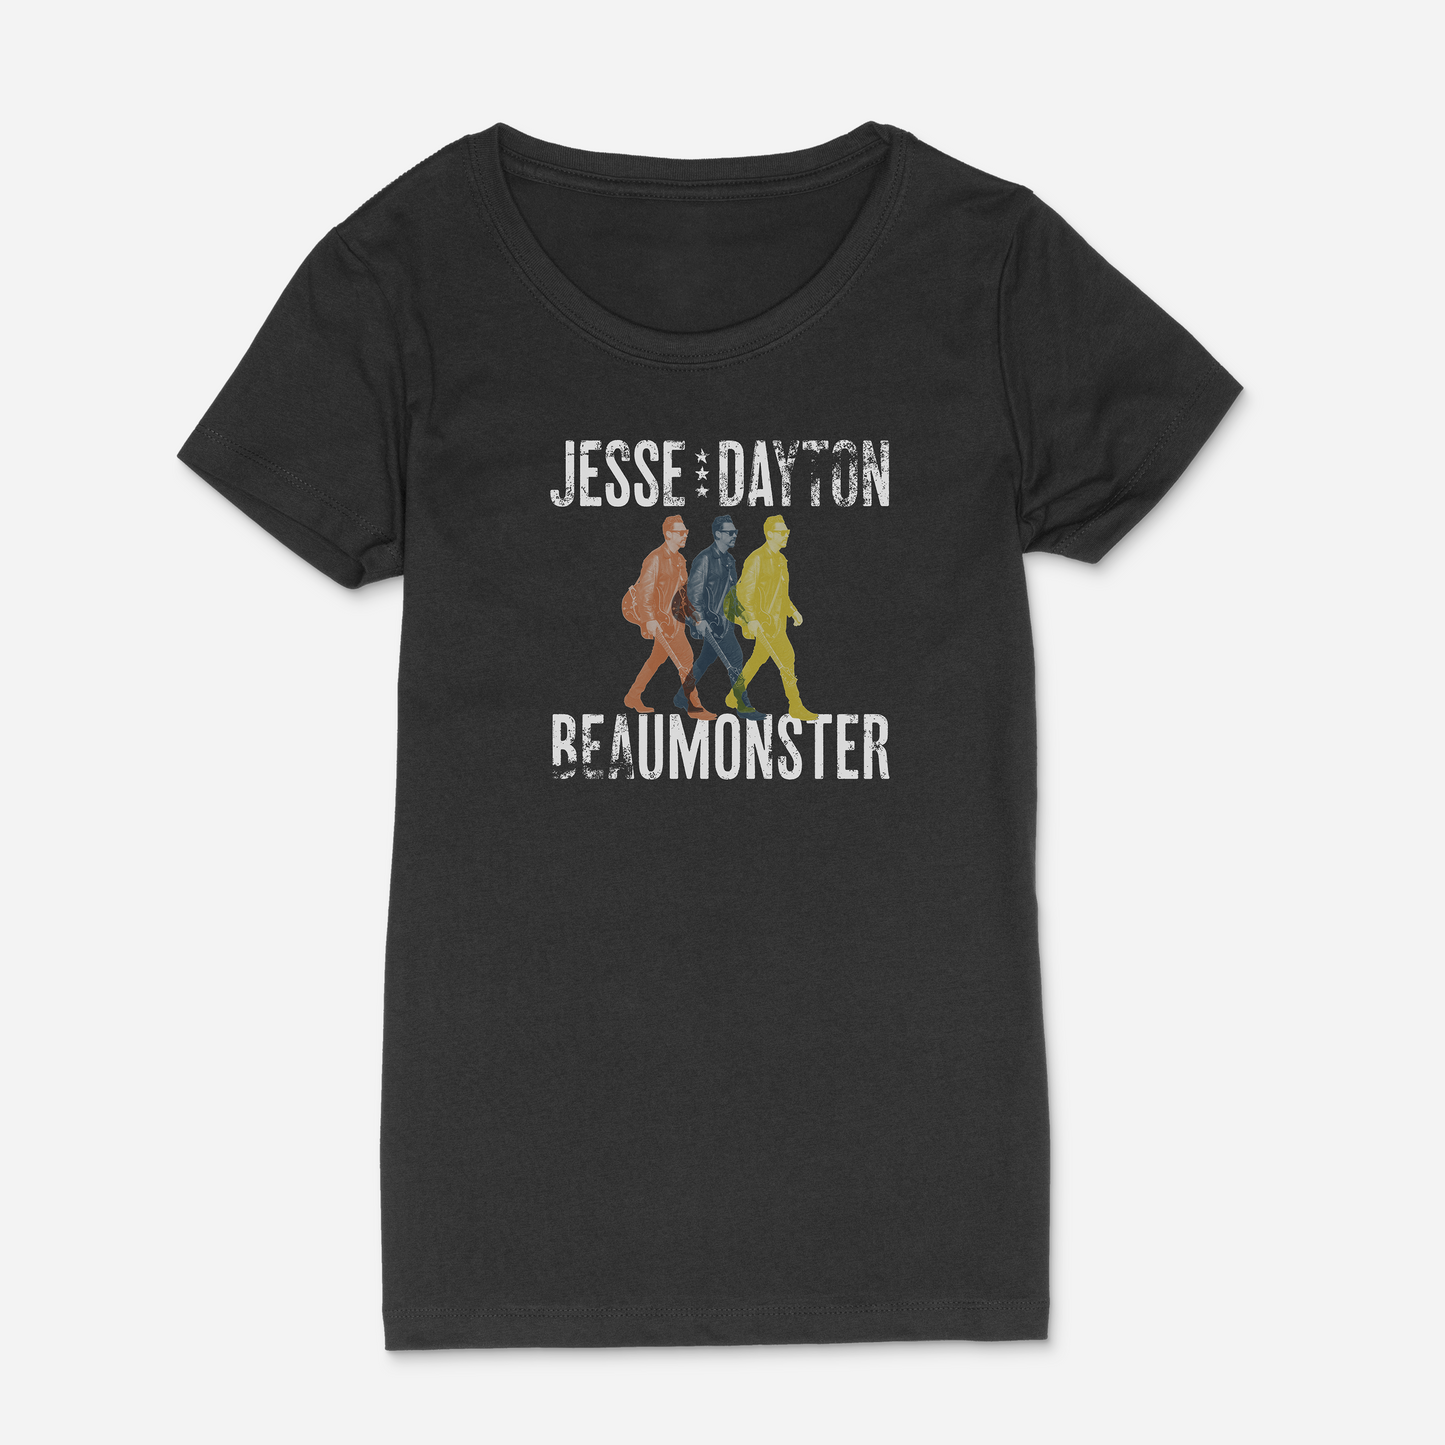 Beaumonster - Women's T-Shirt